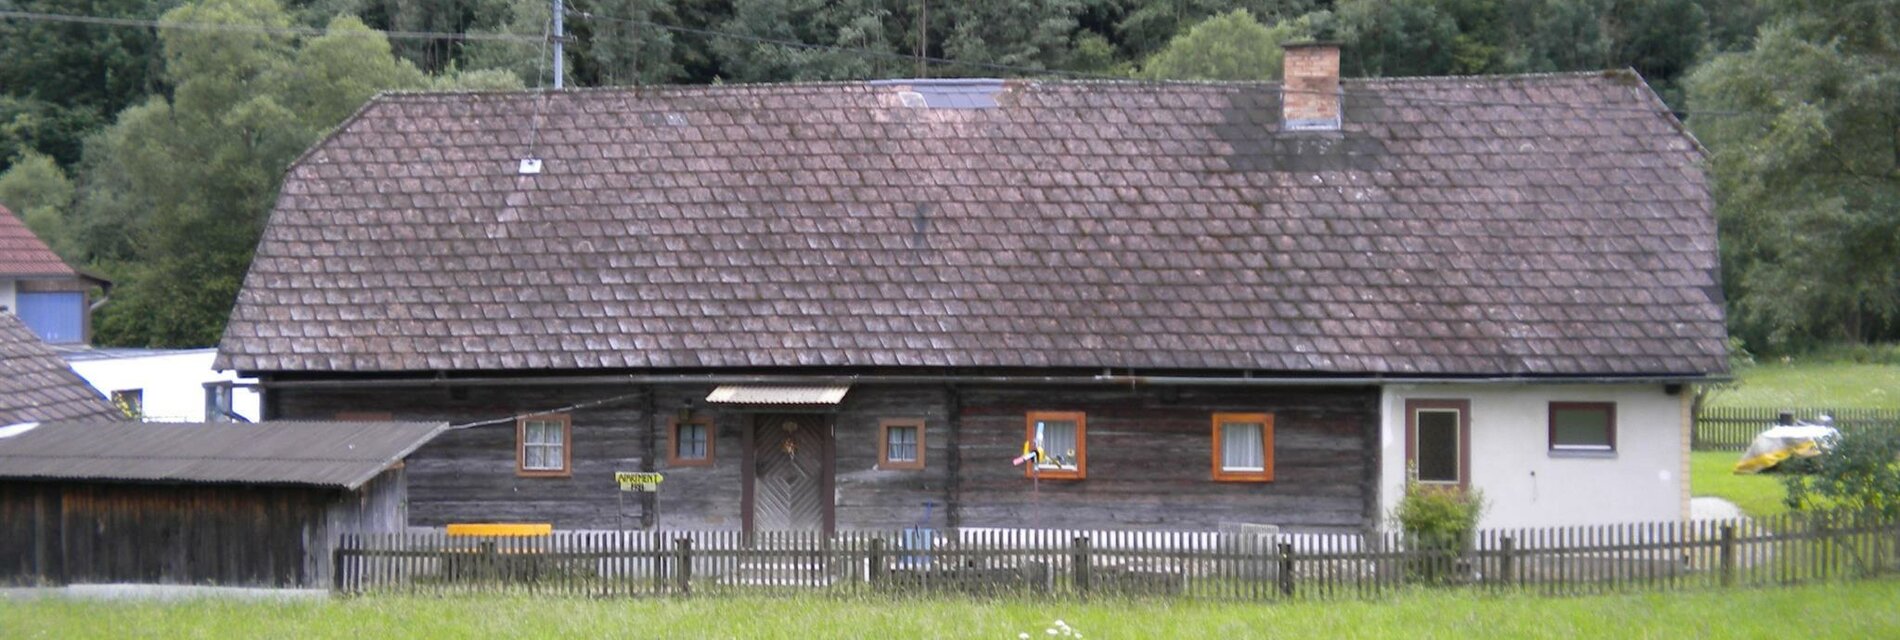 Landhaus Posch